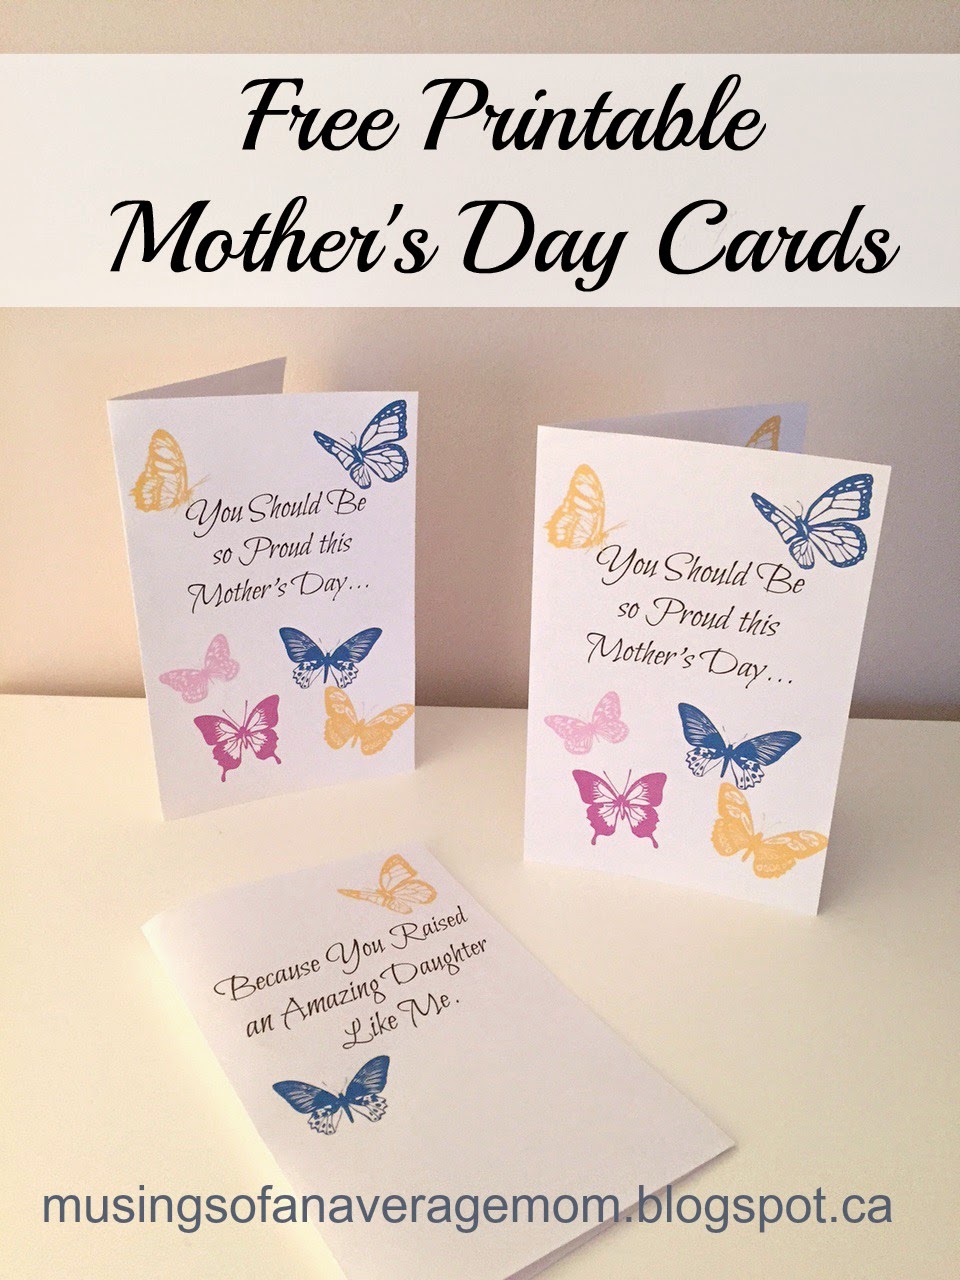 http://musingsofanaveragemom.blogspot.ca/2015/04/free-mothers-day-printable-cards.html